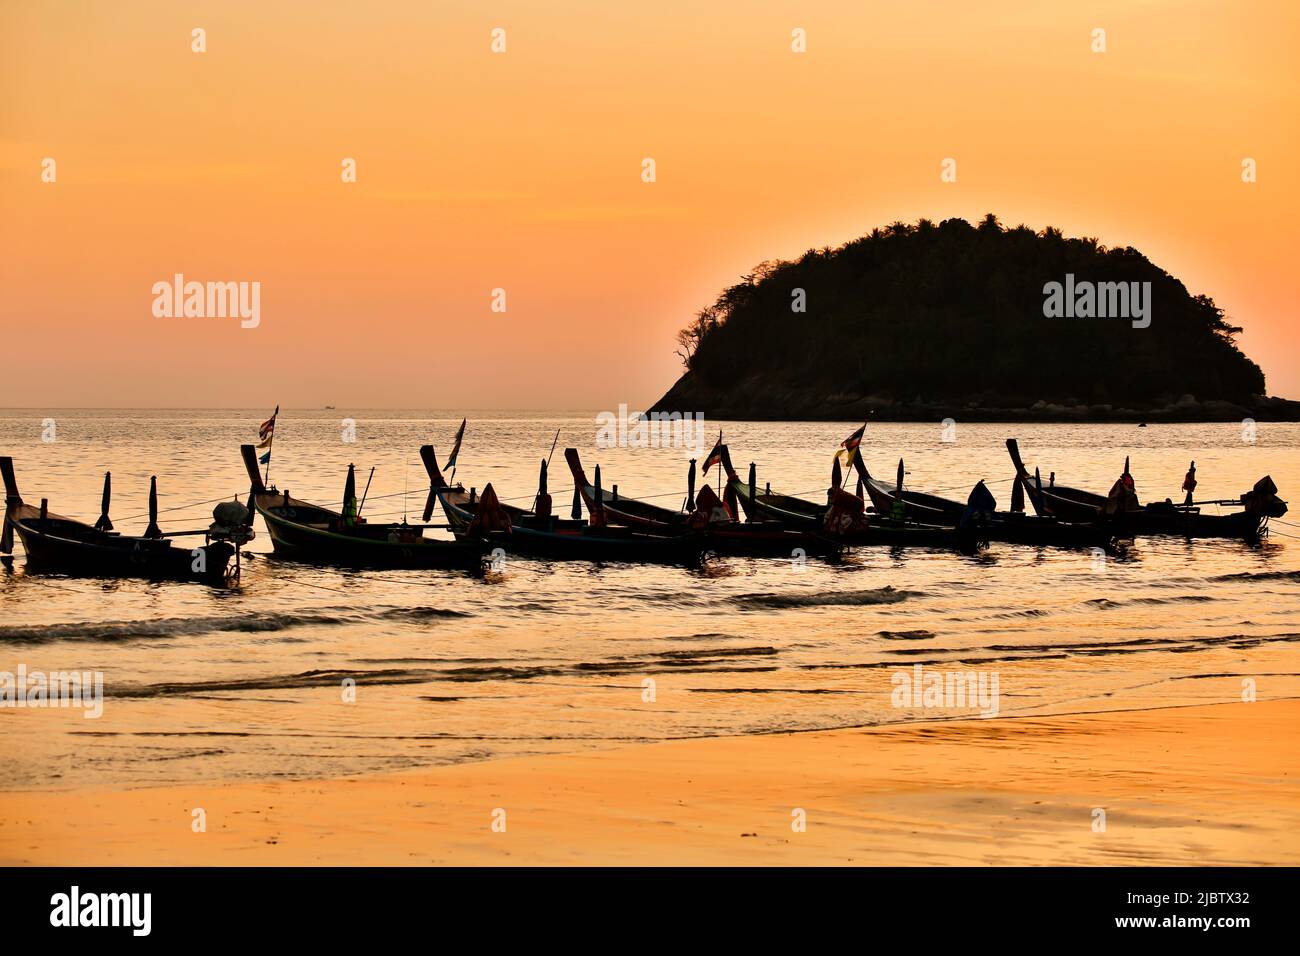 Bateaux à longue queue au coucher du soleil sur Kata Beach situé sur l'île de Phuket dans la province de Phuket, en Thaïlande. Banque D'Images